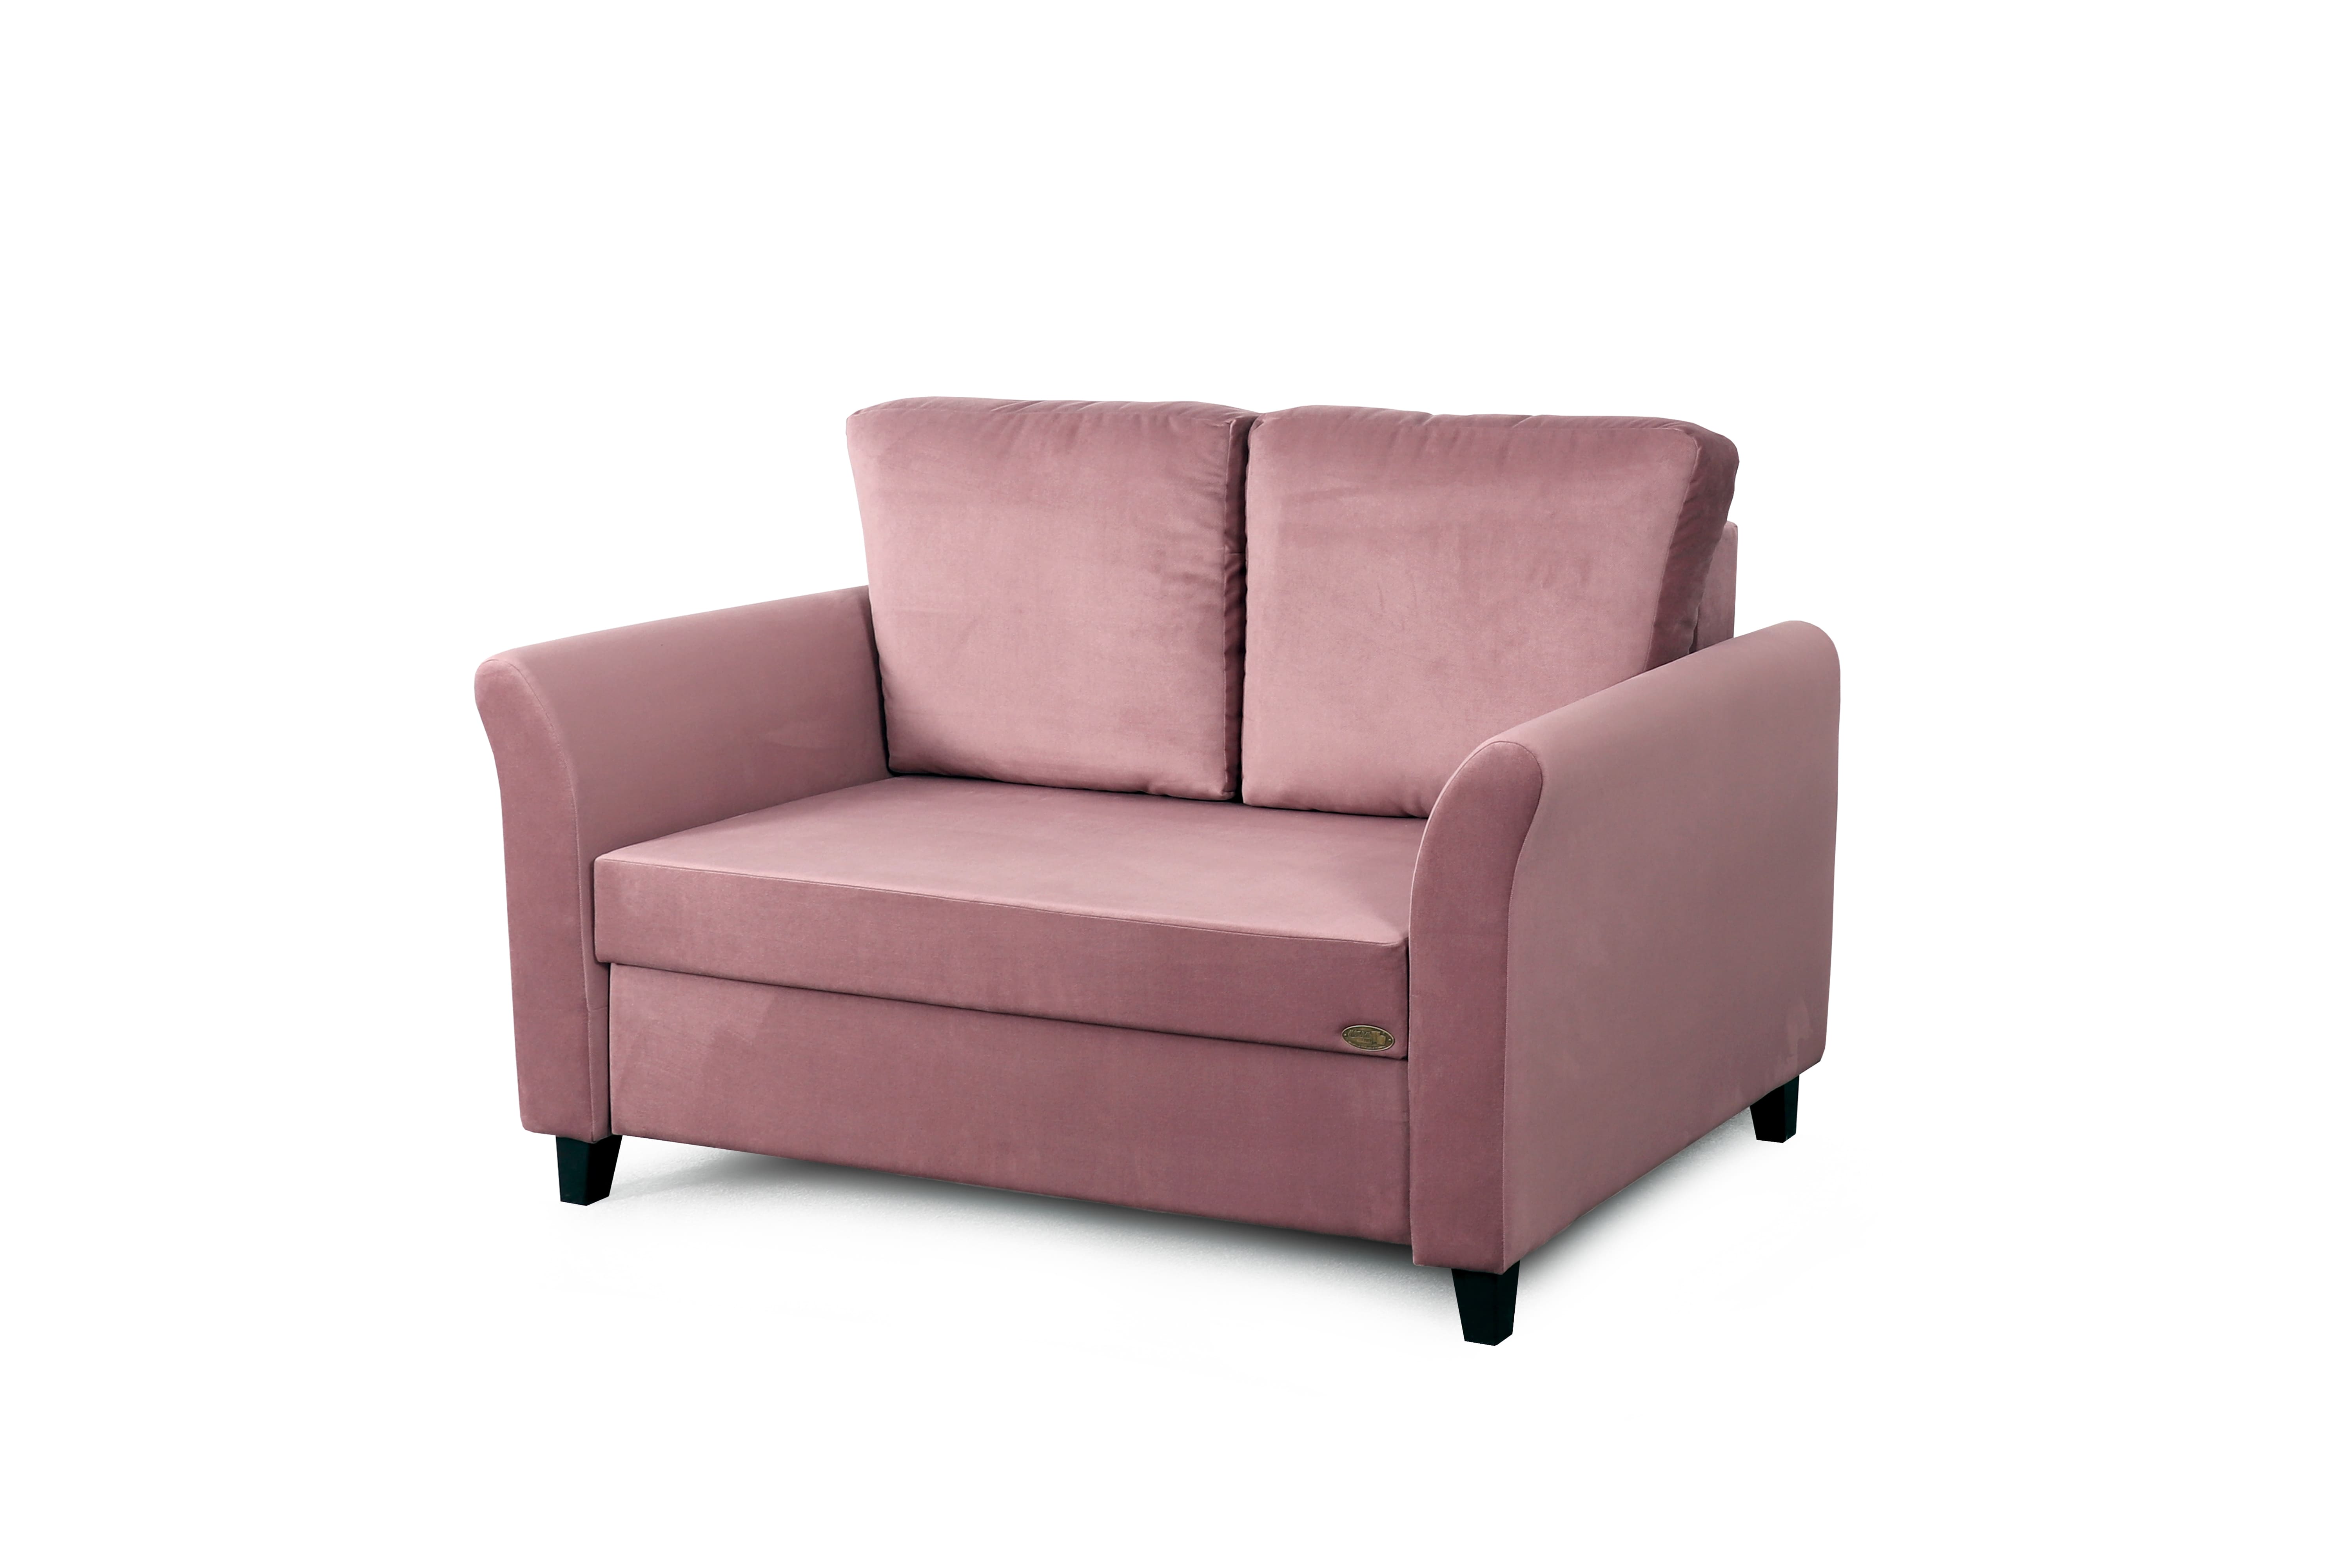 Джерси 3 - 1200 (БНП) диван-кровать СТАНДАРТ (вариант 2)